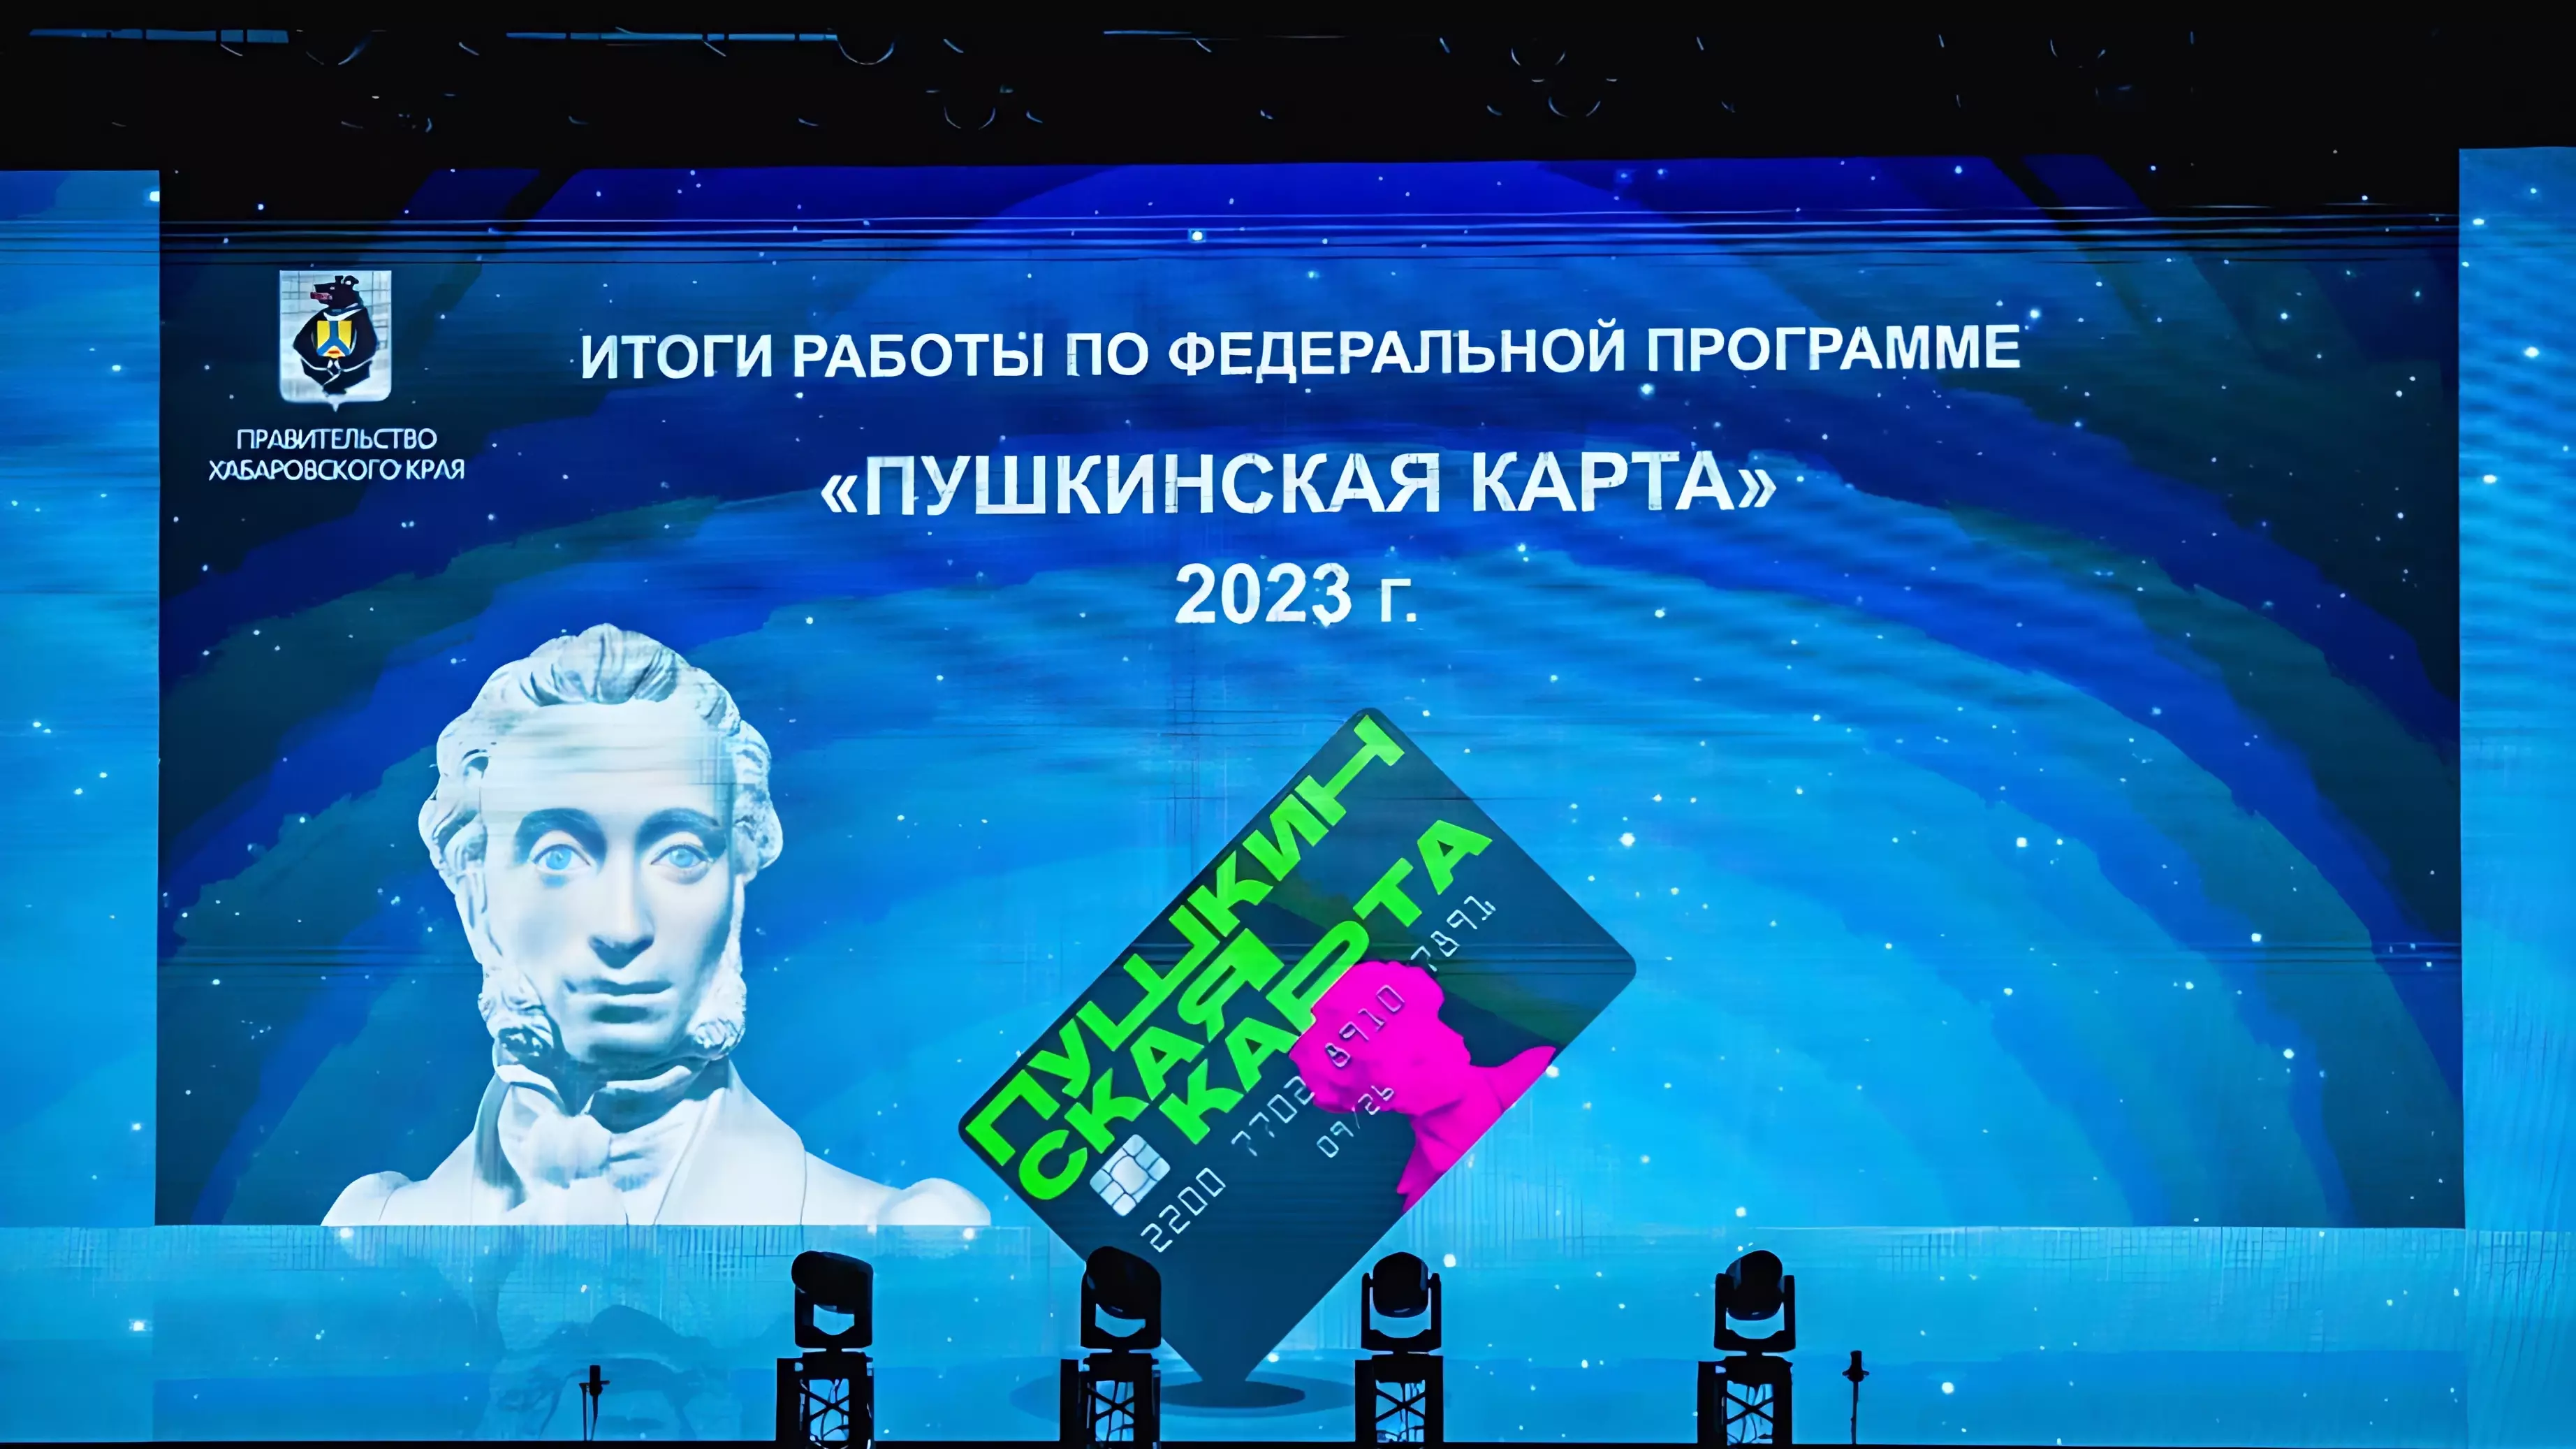 Хабаровский край — лидер в реализации программы «Пушкинская карта» на Дальнем Востоке